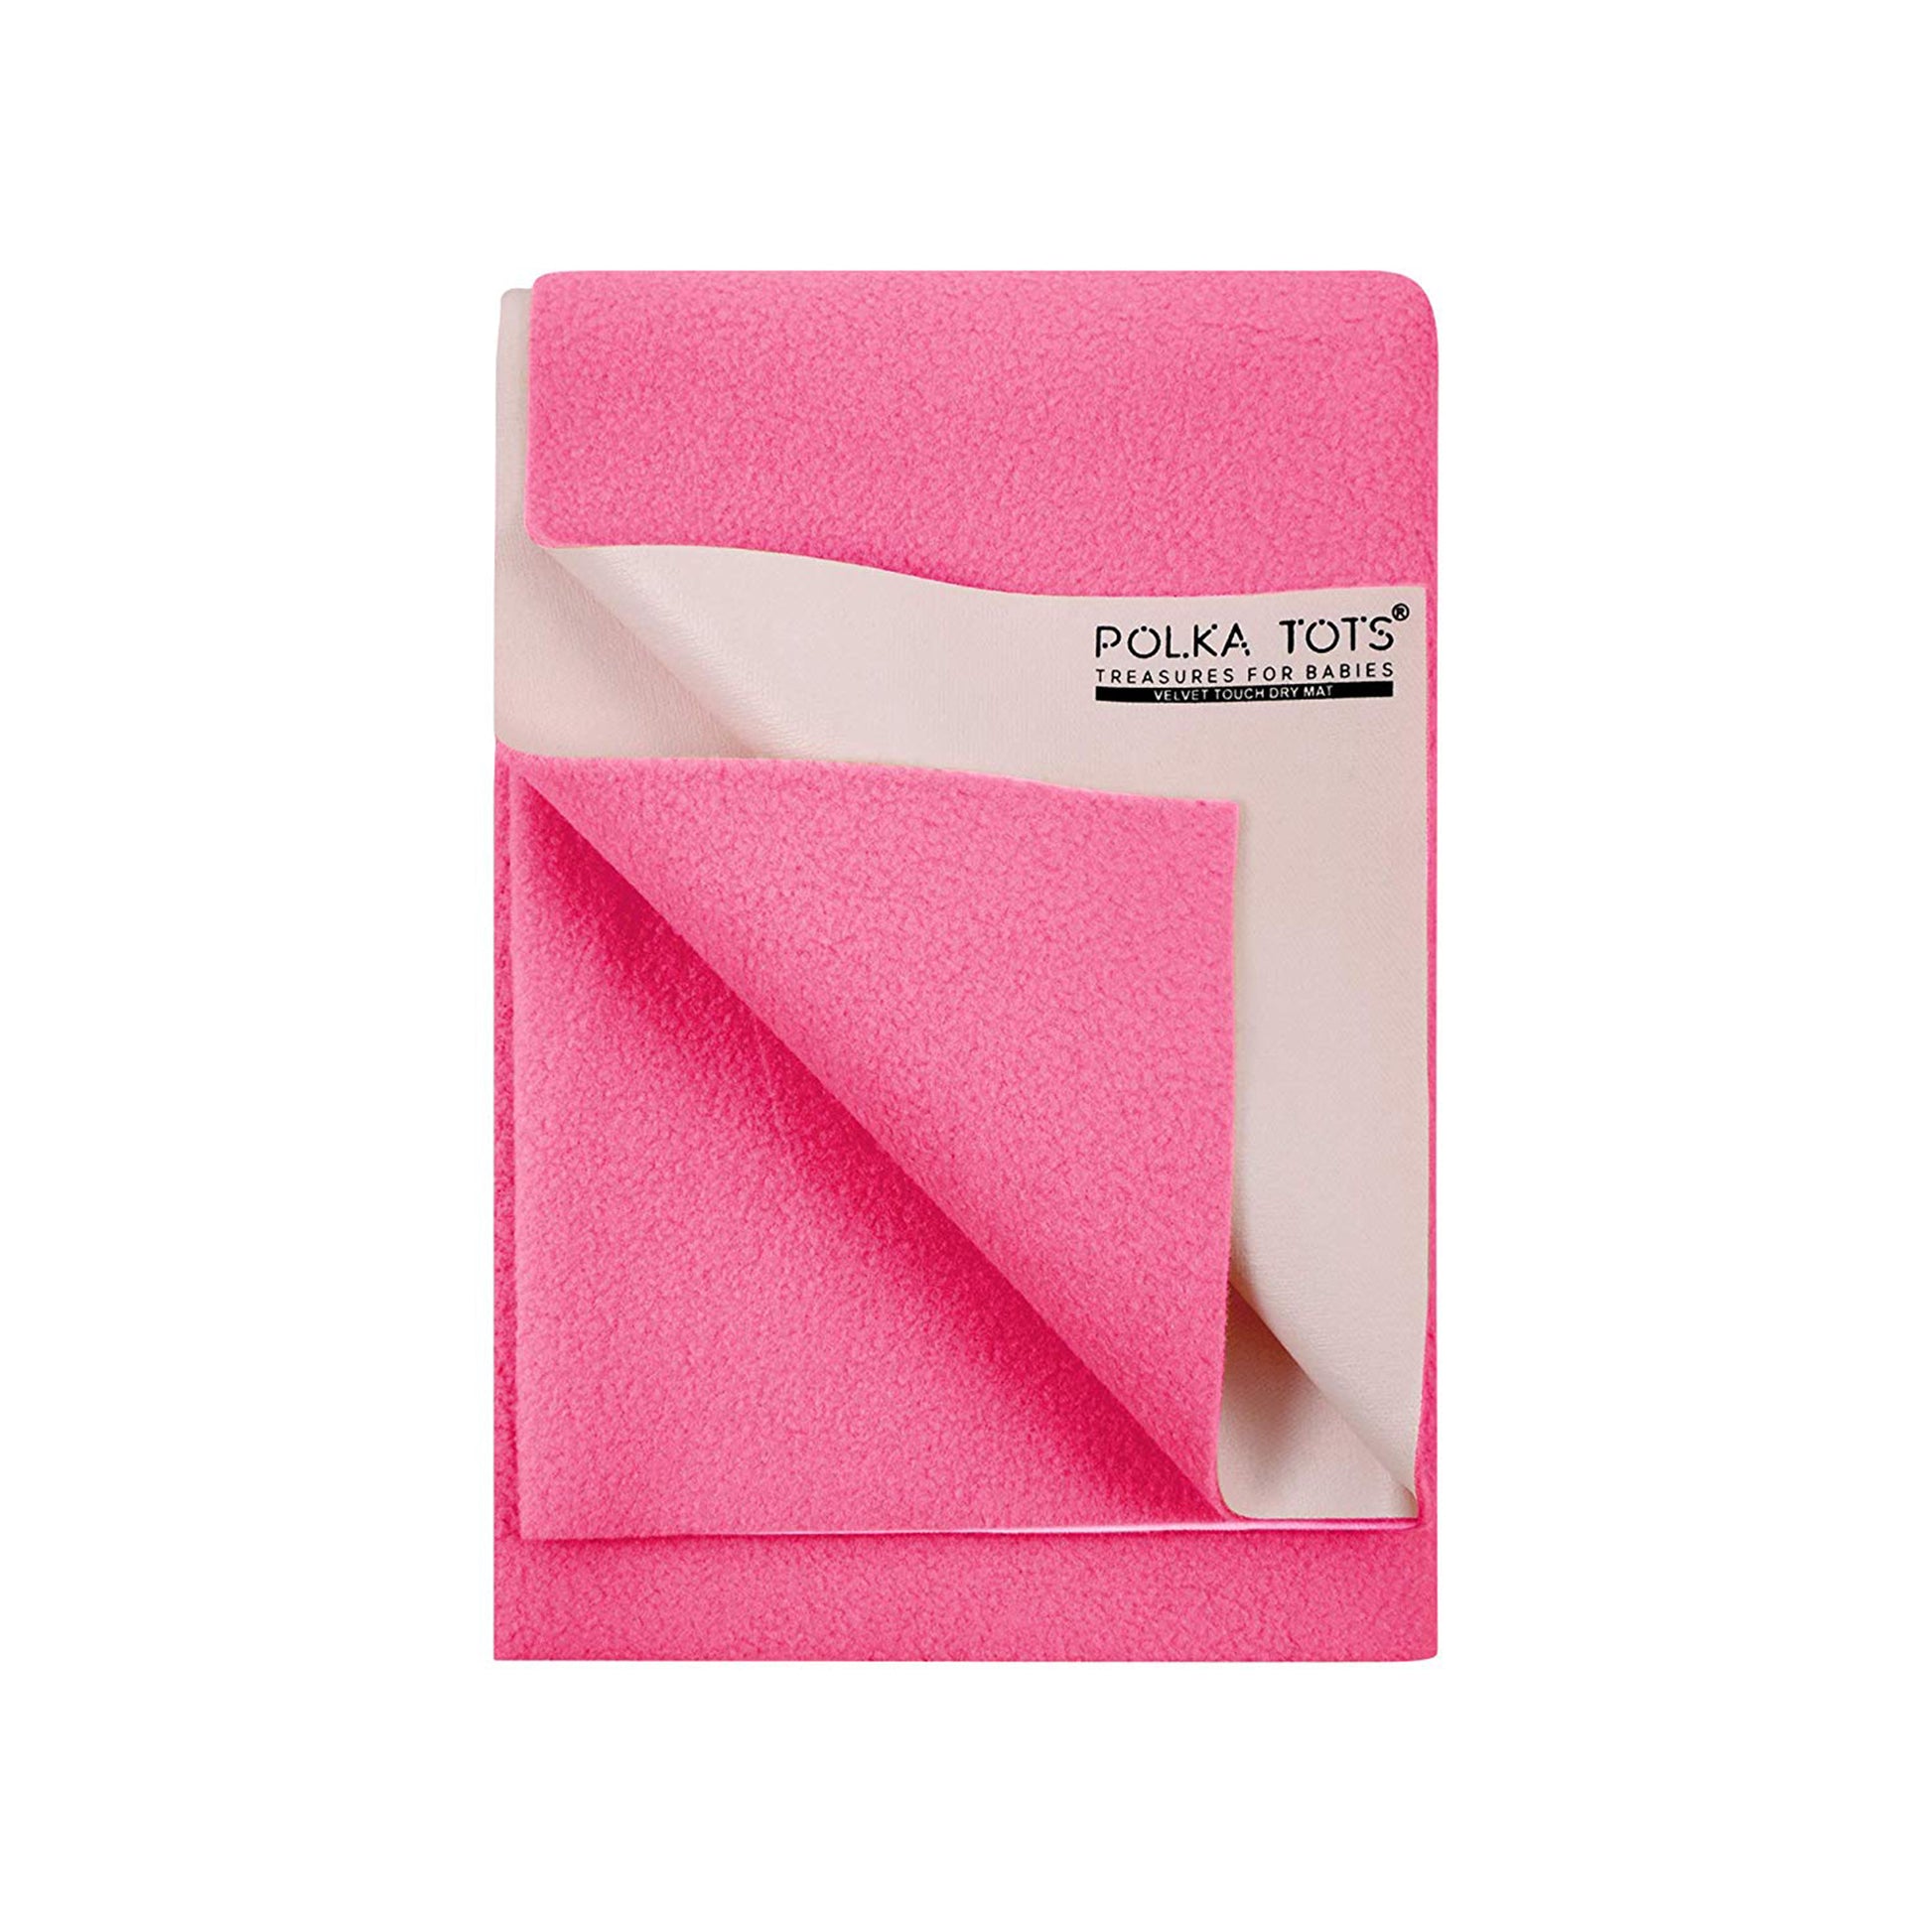 polka tots pink dry sheet 